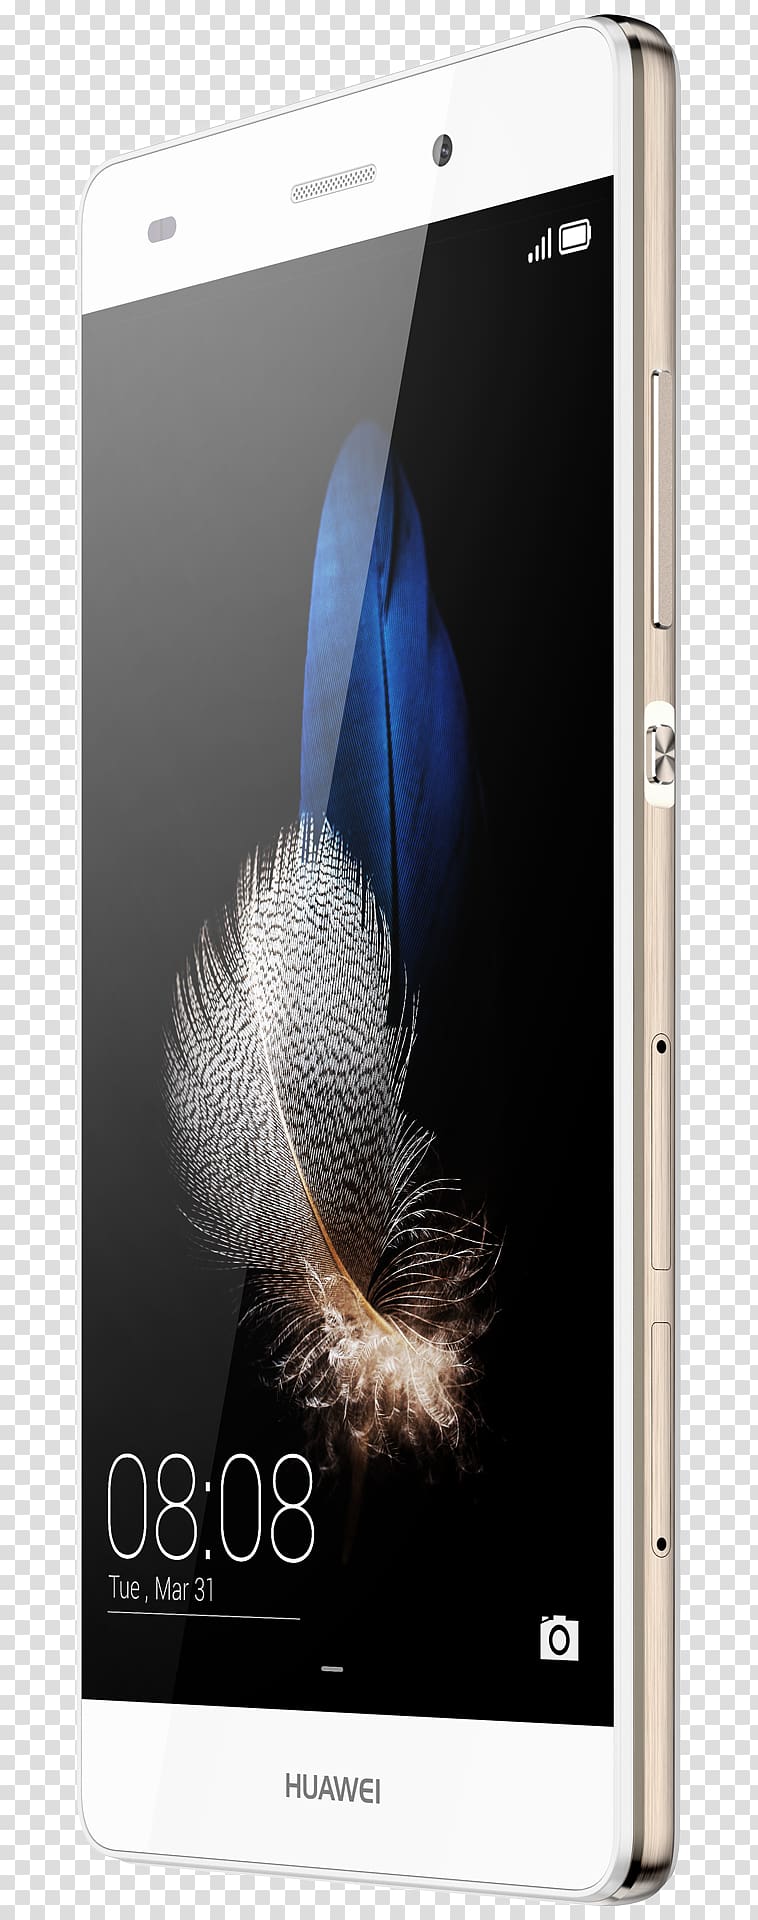 华为 Huawei P9 Smartphone Telephone, smartphone transparent background PNG clipart